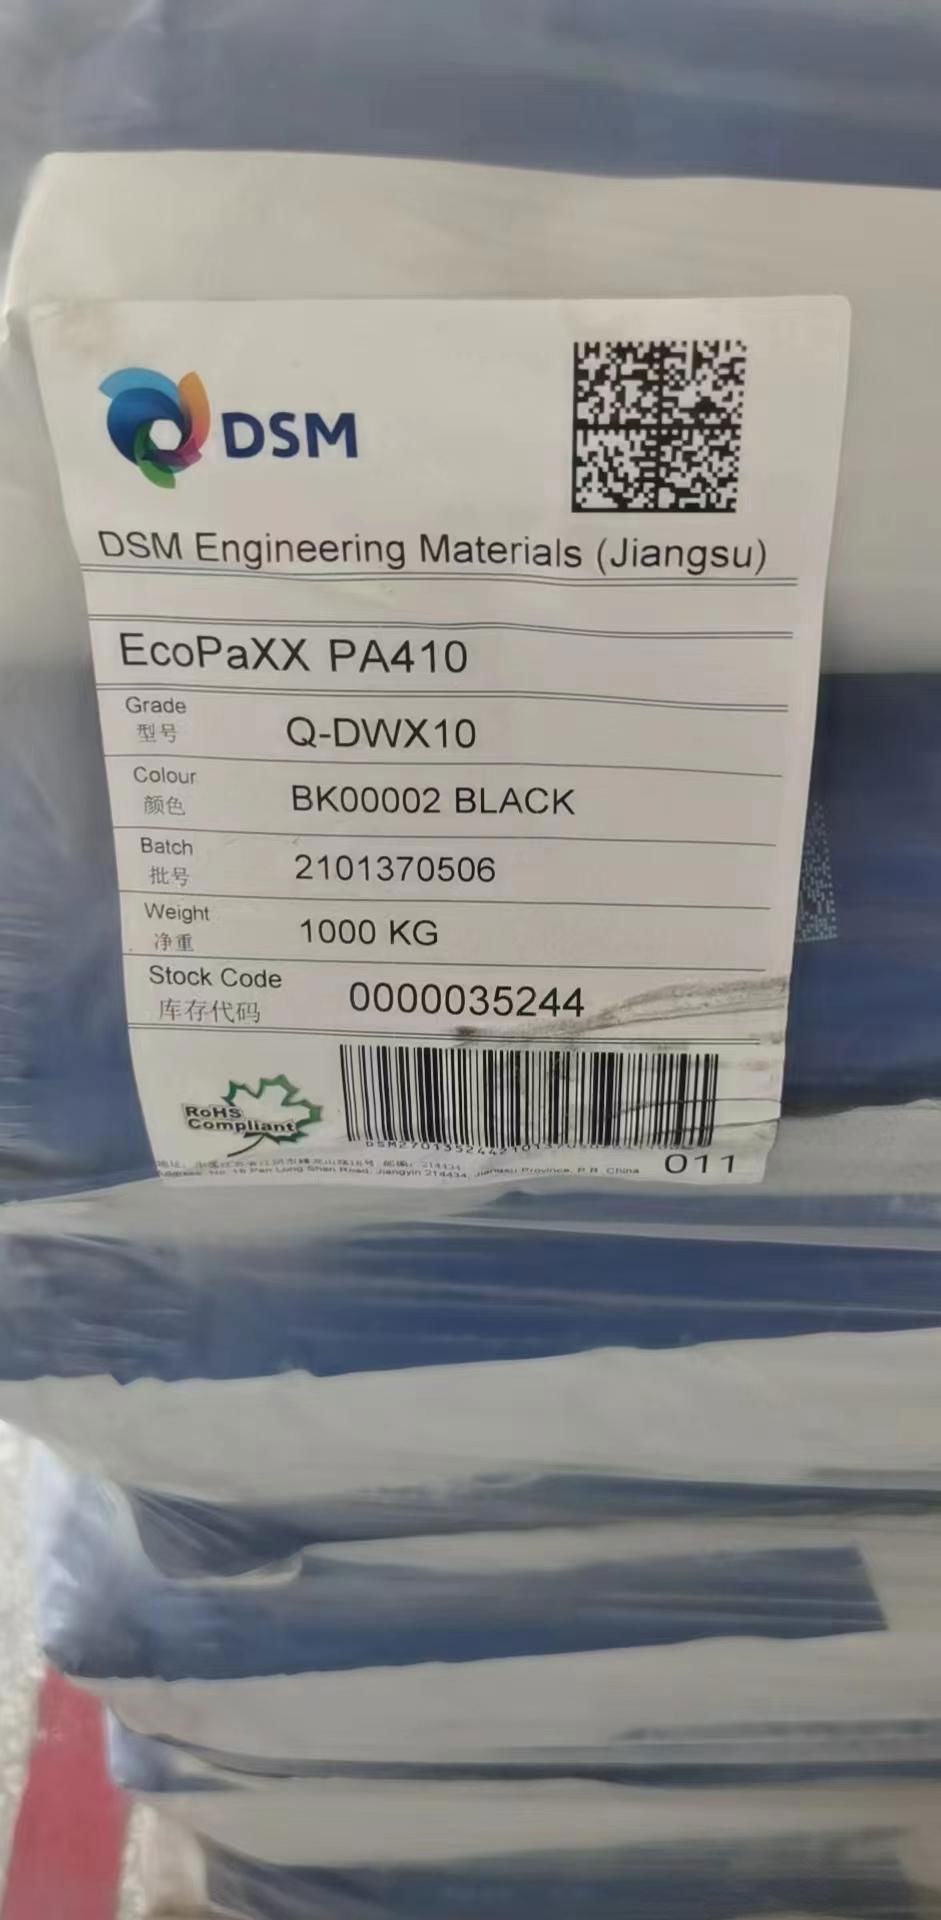 EcoPaXX PA410